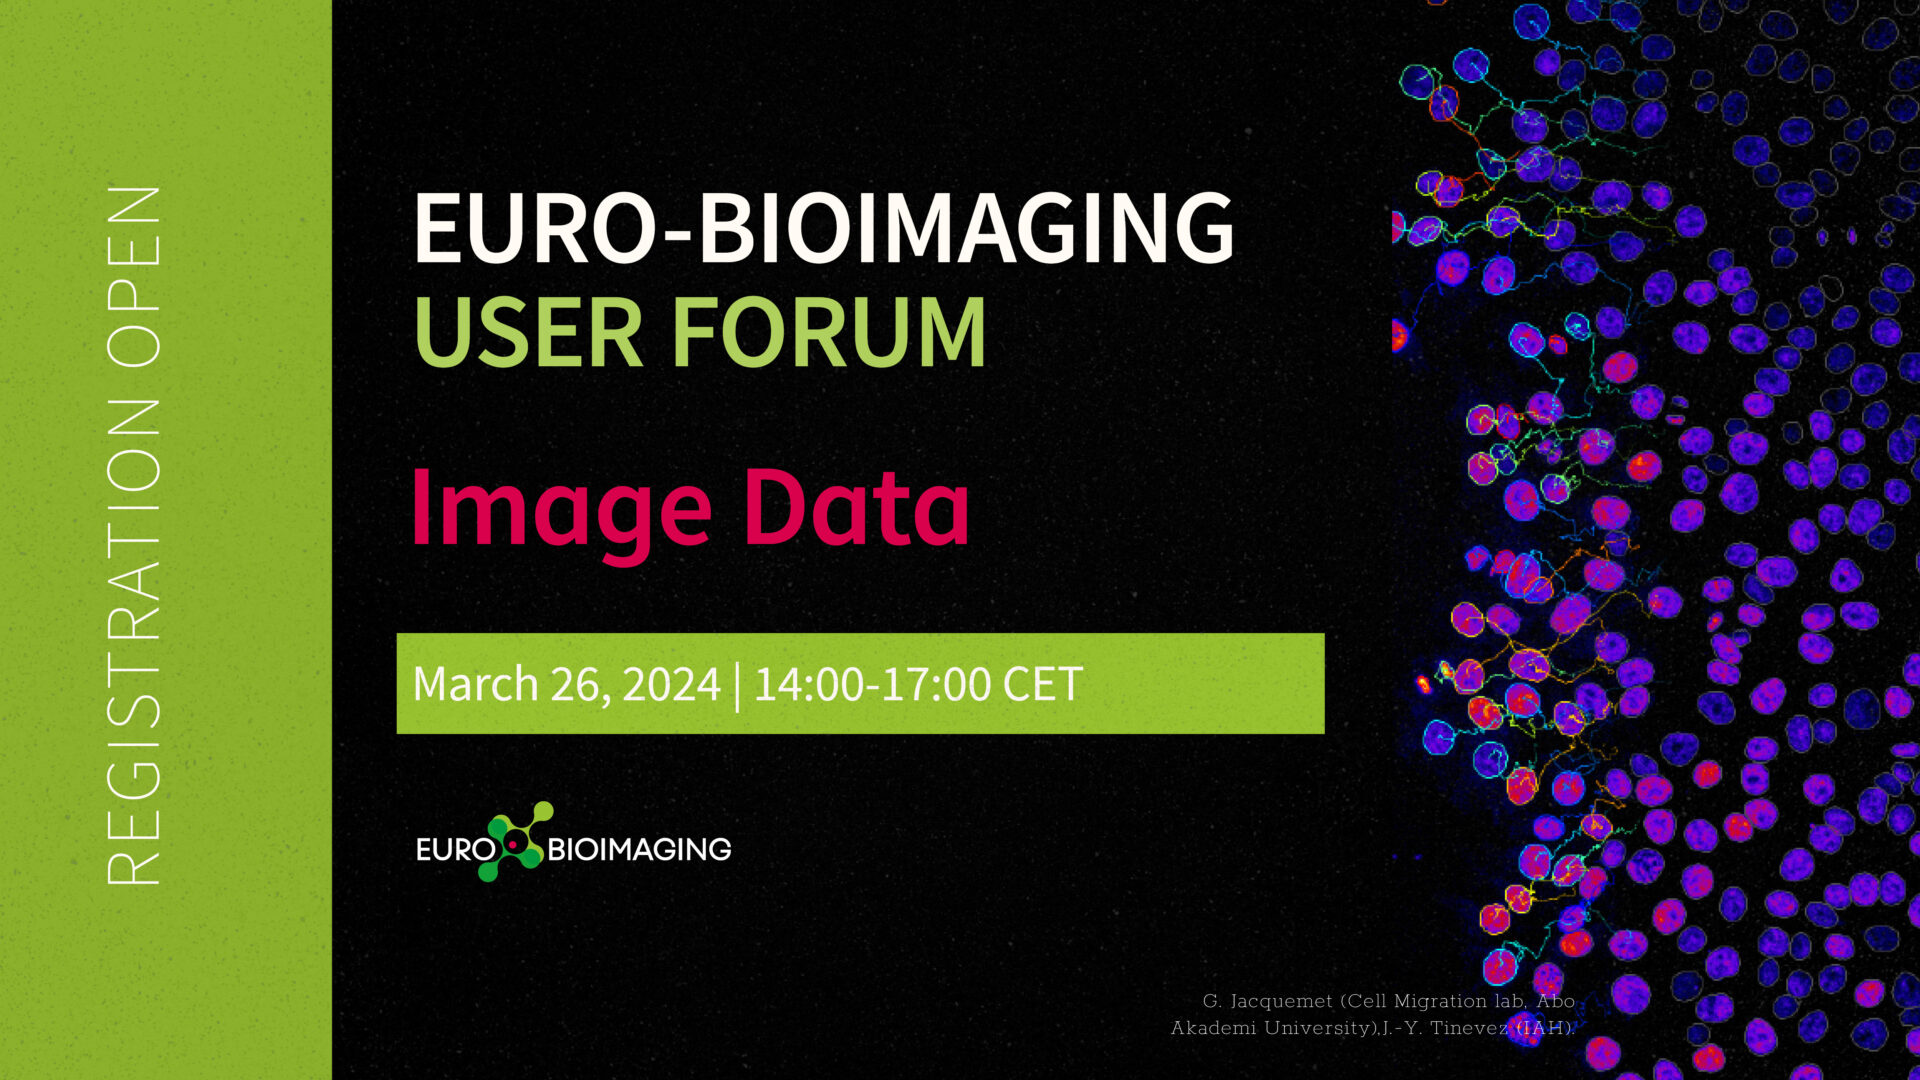 Euro-BioImaging User Forum on Image Data